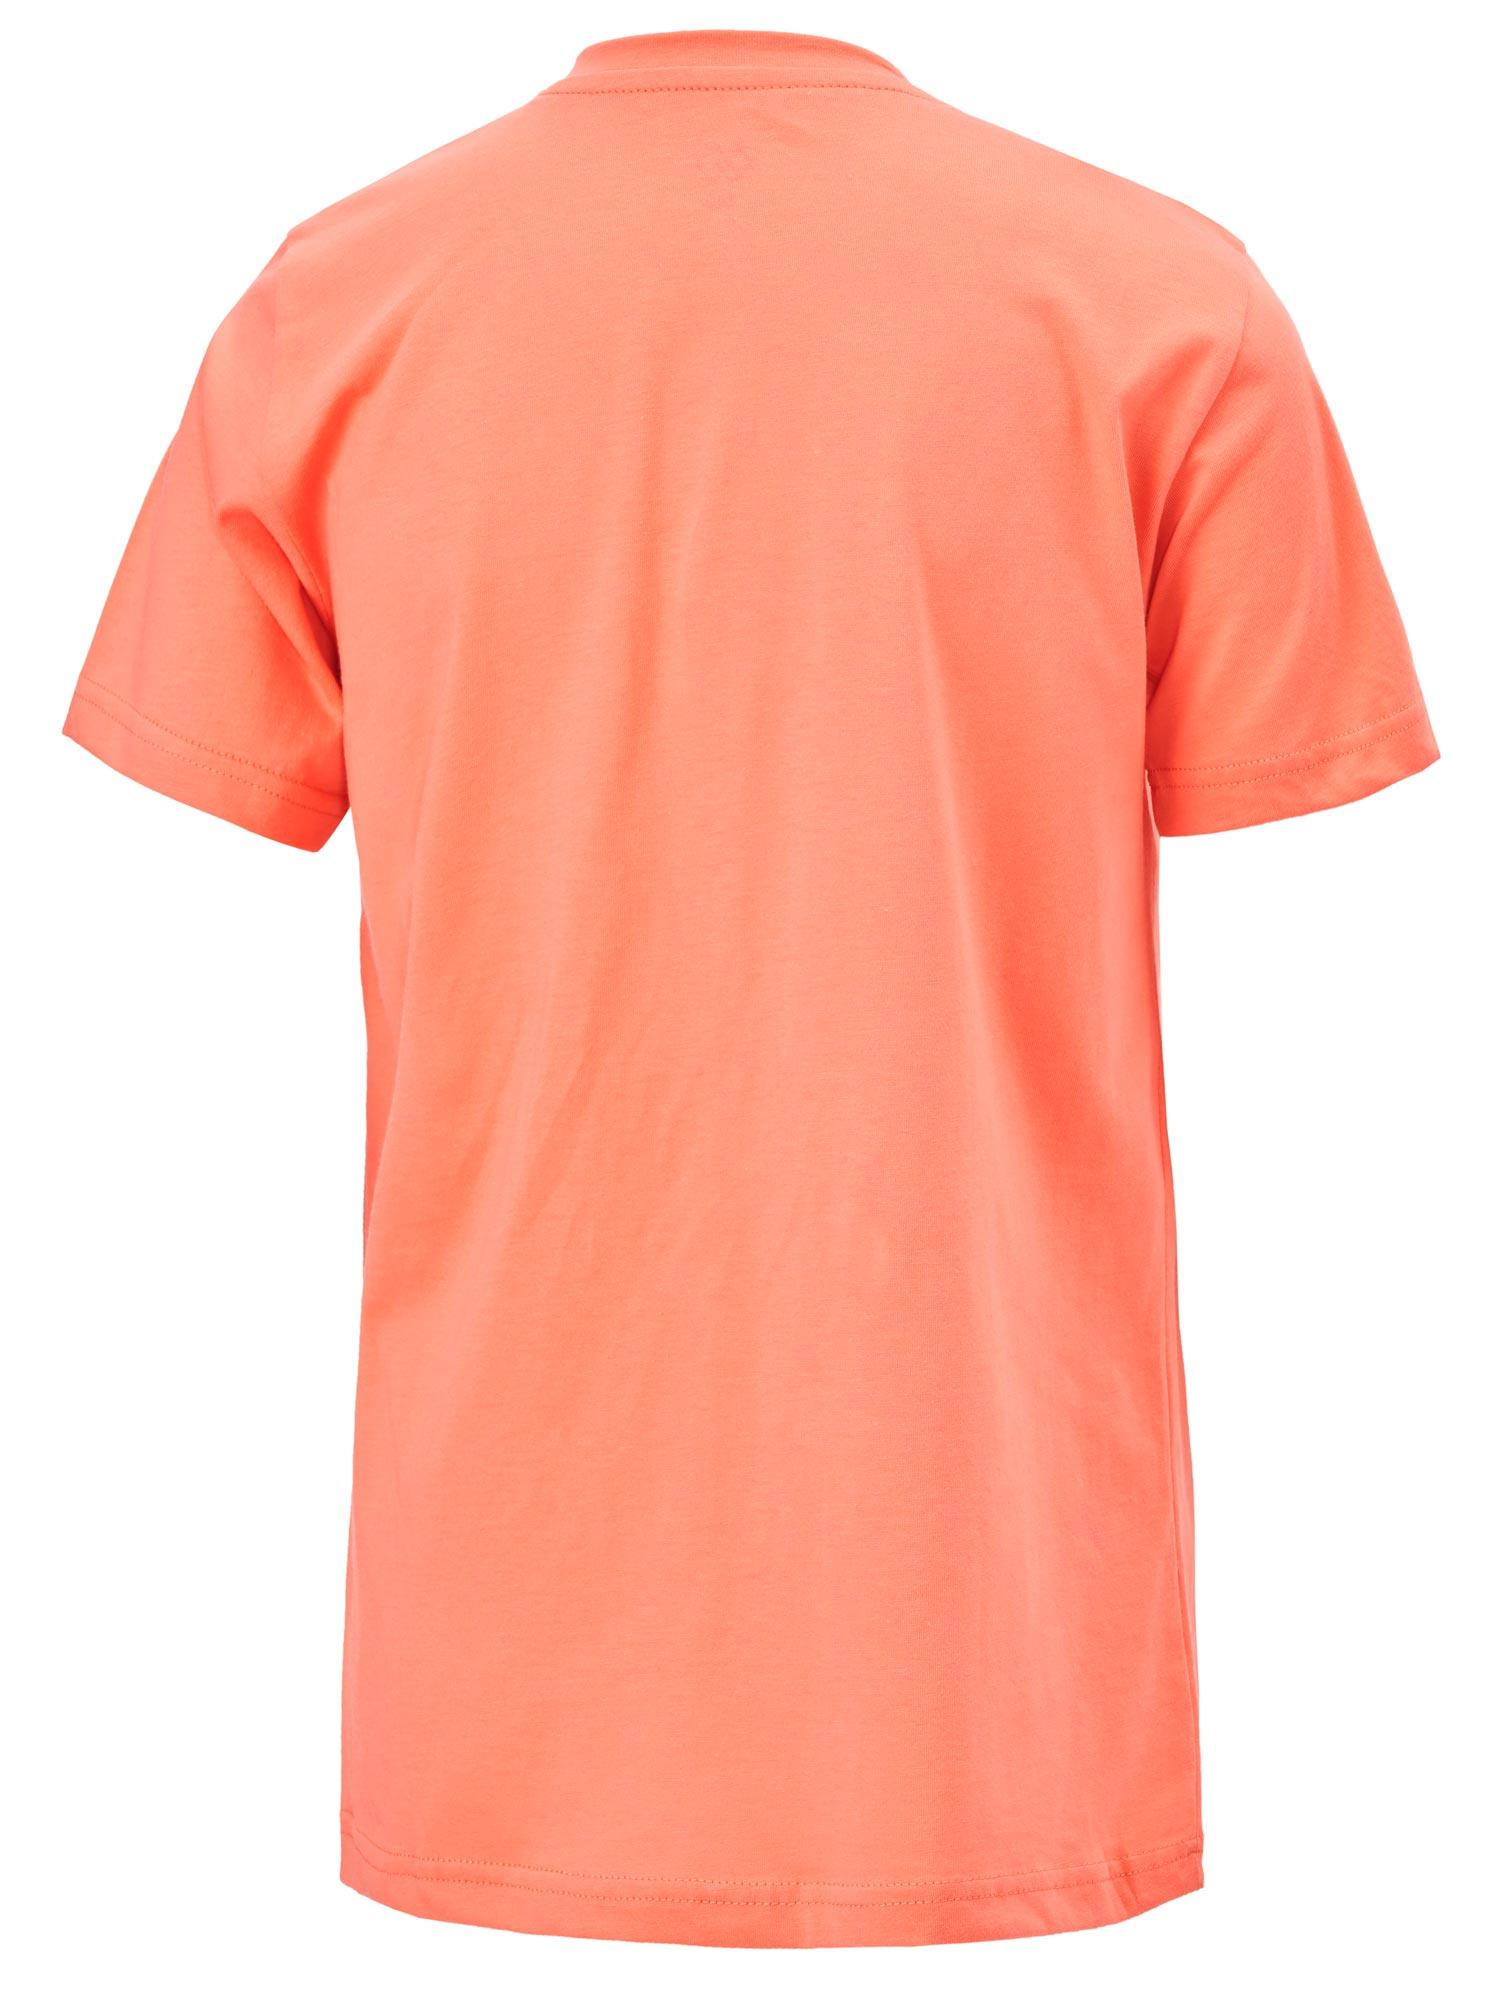 Selected image for BRILLE Majica za devojčice Cute narandžasta